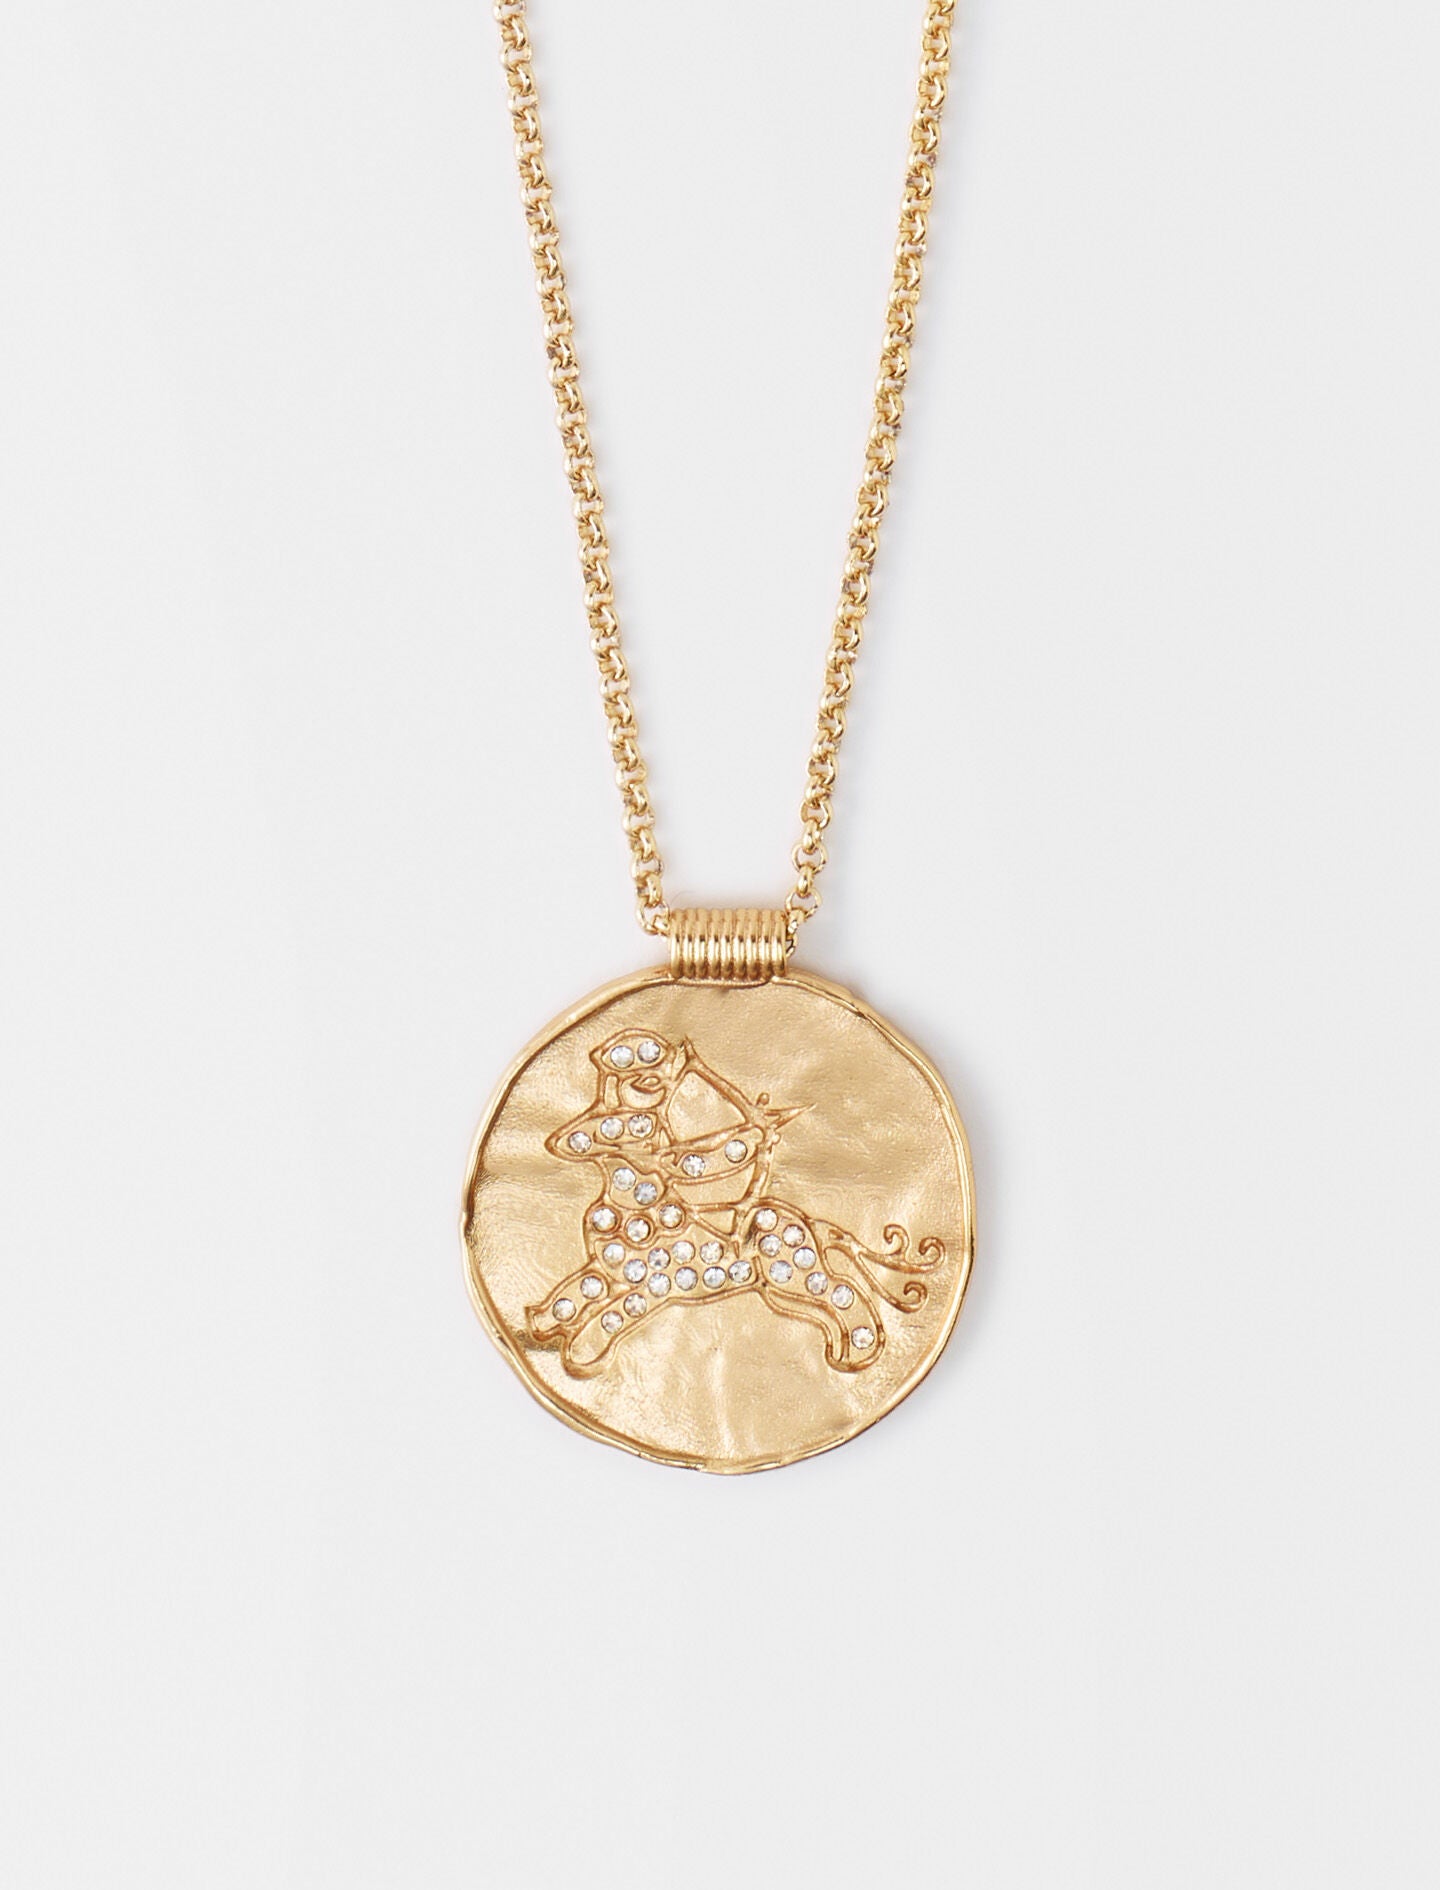 Sagittarius-featured-Sagittarius zodiac medal